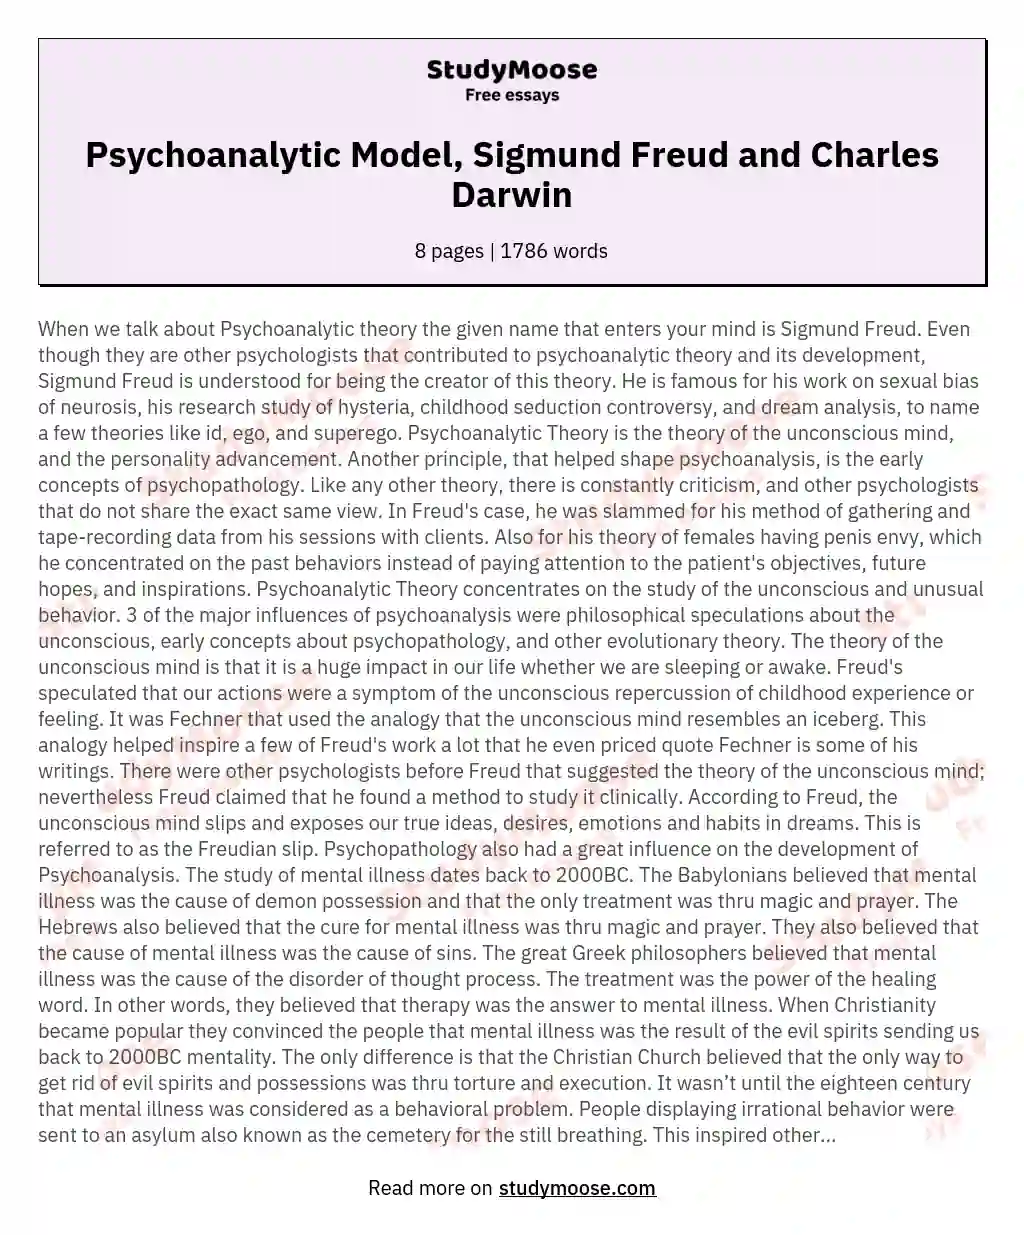 Psychoanalytic Model, Sigmund Freud and Charles Darwin